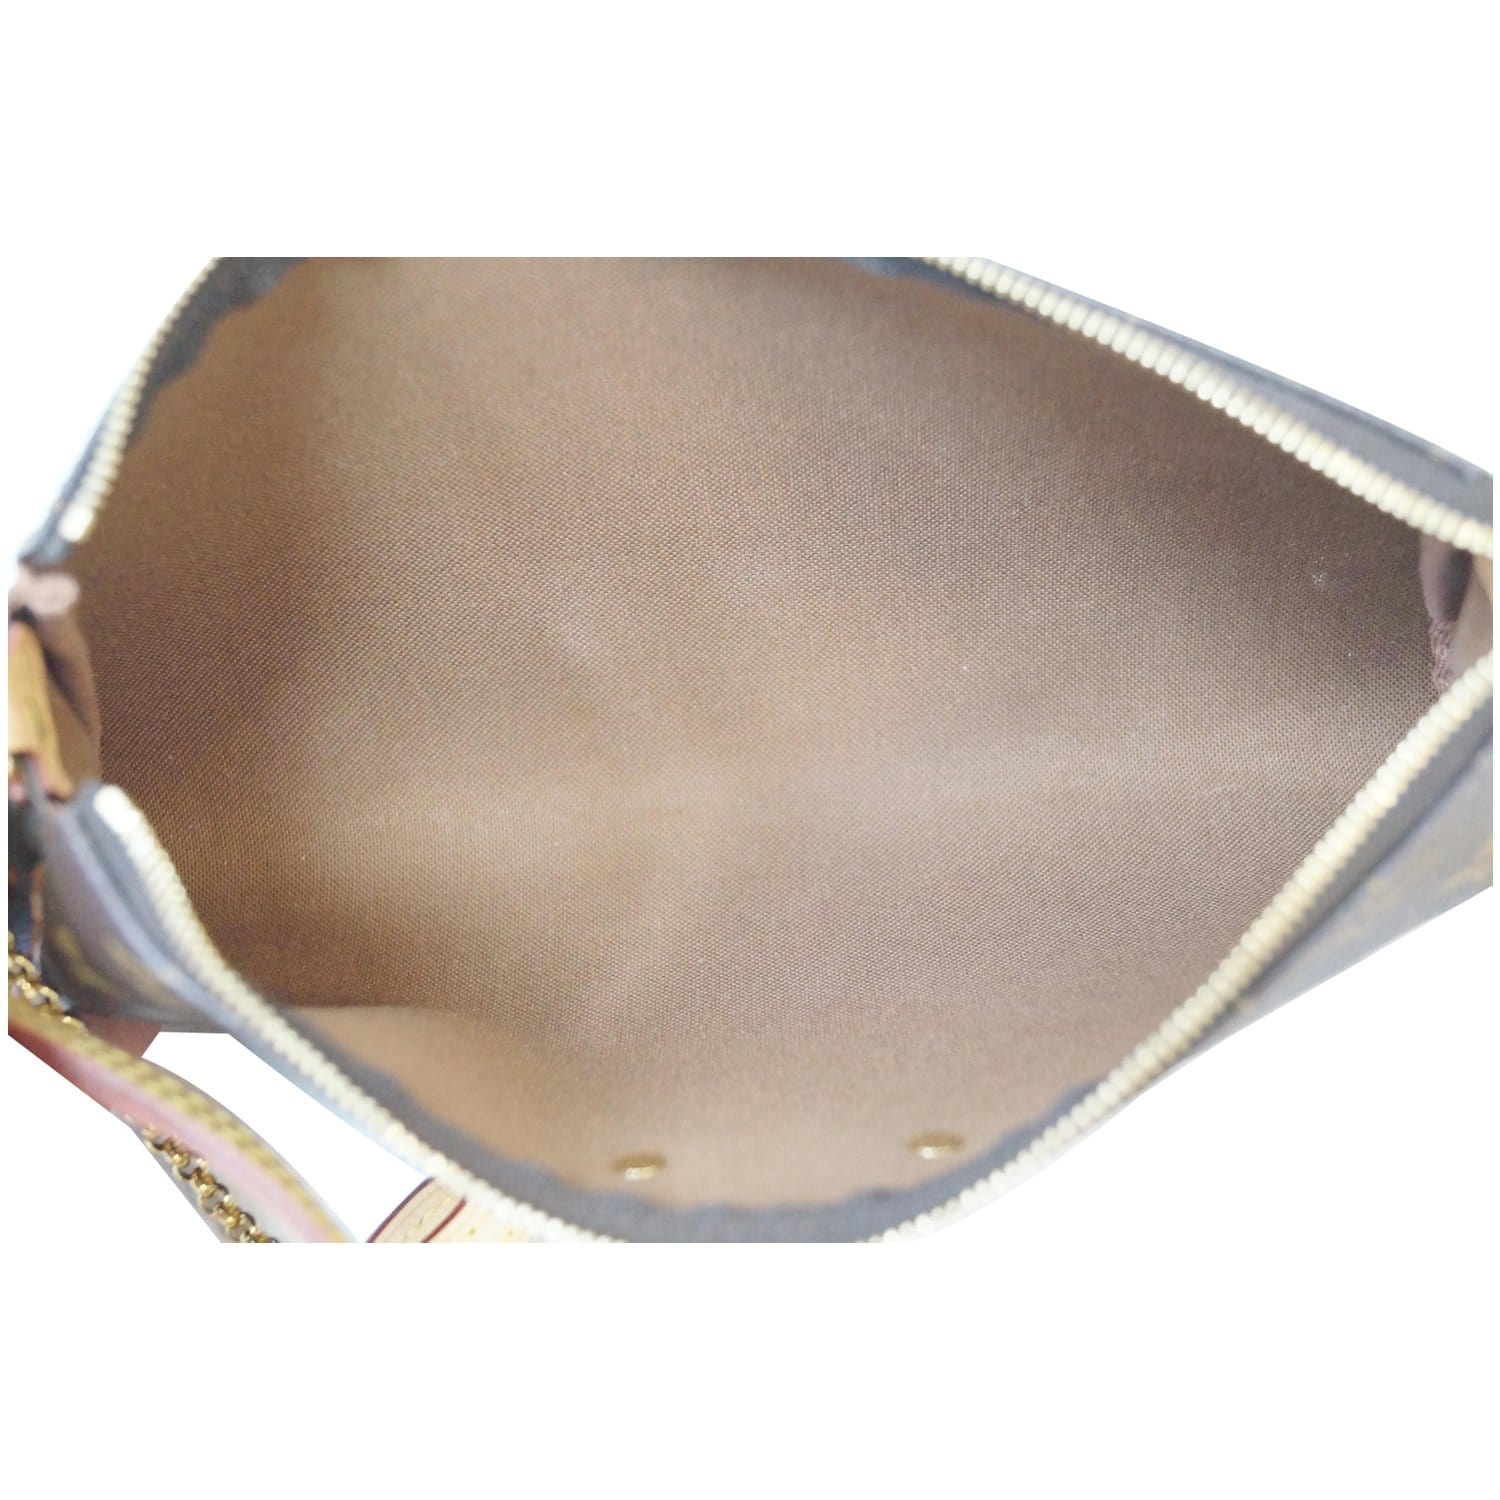 Eva cloth handbag Louis Vuitton Brown in Cloth - 38034789